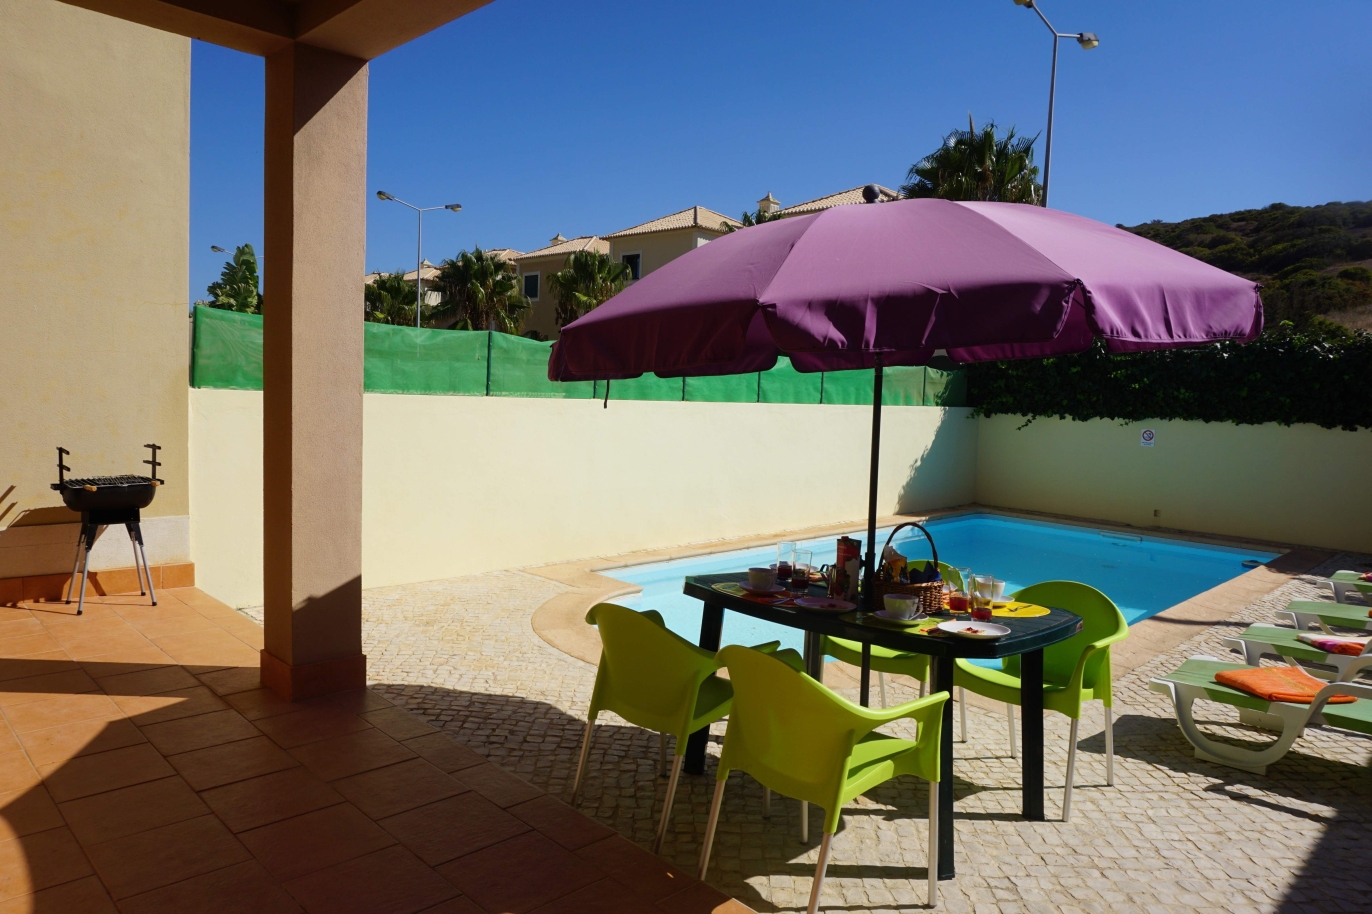 Venda de moradia com piscina, Budens,Vila do Bispo, Algarve, Portugal_118805